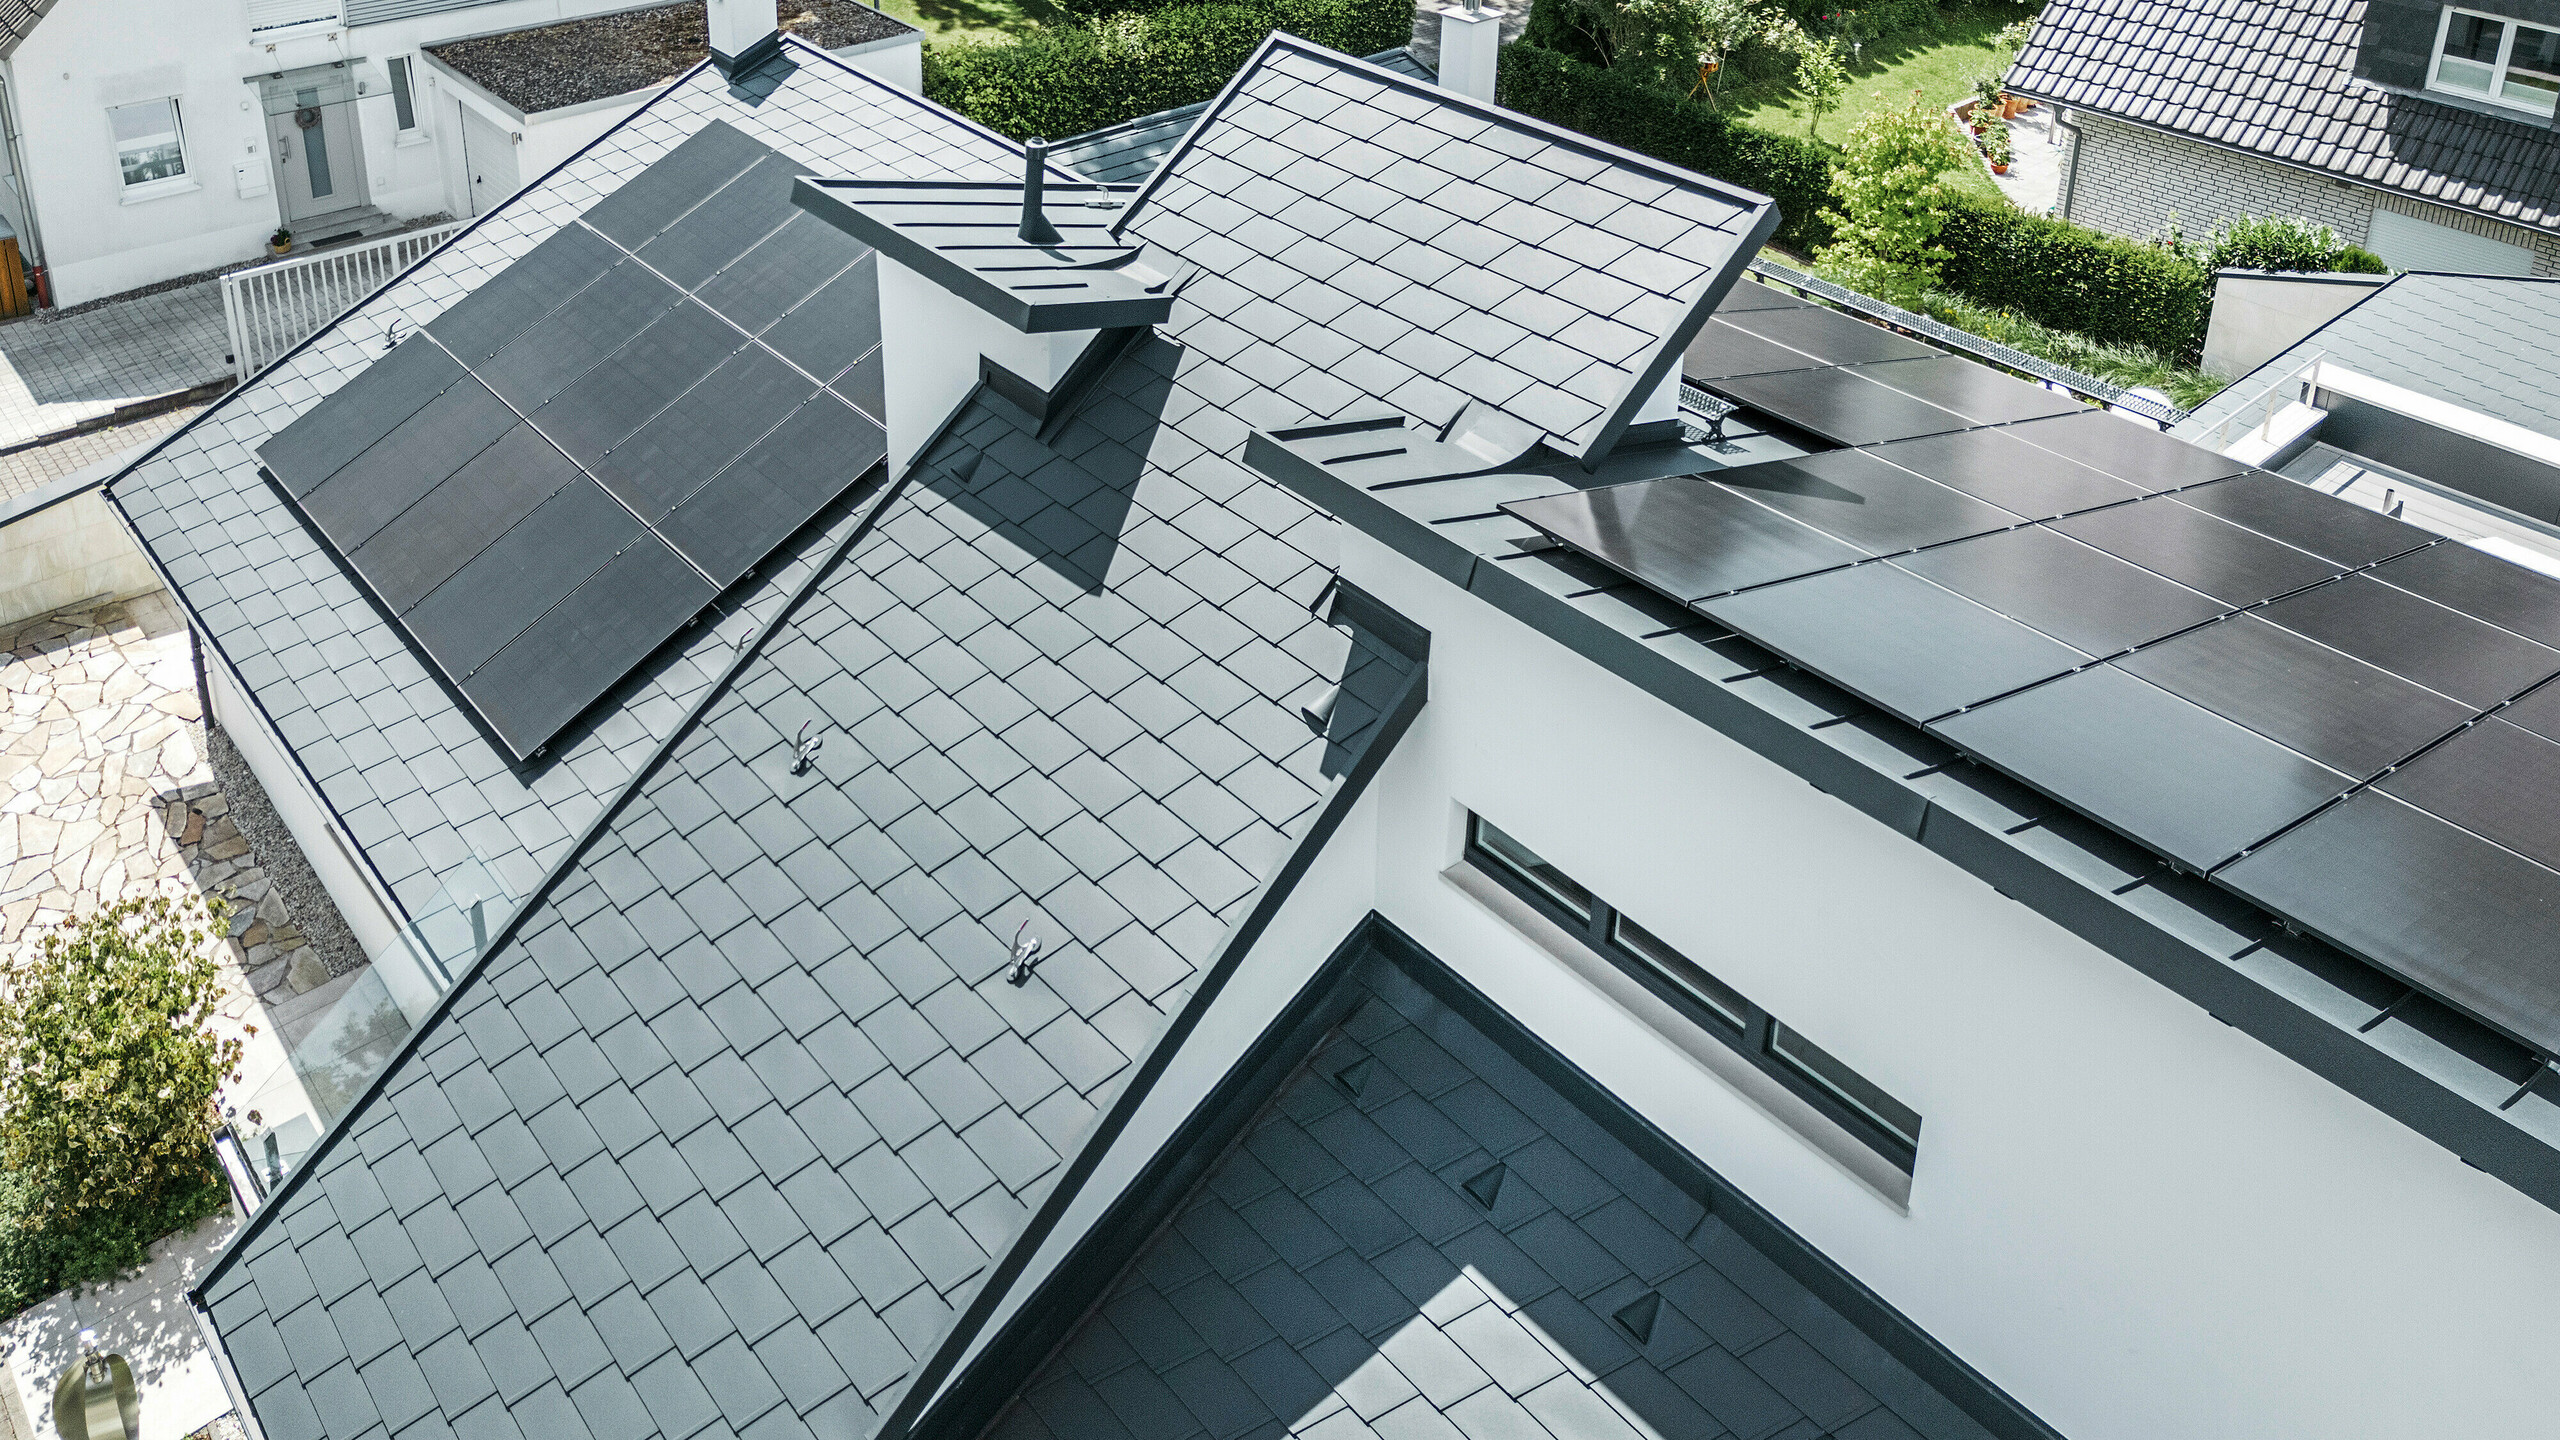 Widok z lotu ptaka na różne poziomy na dachu nowoczesnego domu jednorodzinnego w Dortmundzie, który został wyposażony w gonty dachowe PREFA DS.19 i PREFALZ w kolorze P.10 antracyt oraz system fotowoltaiczny na dużą skalę.